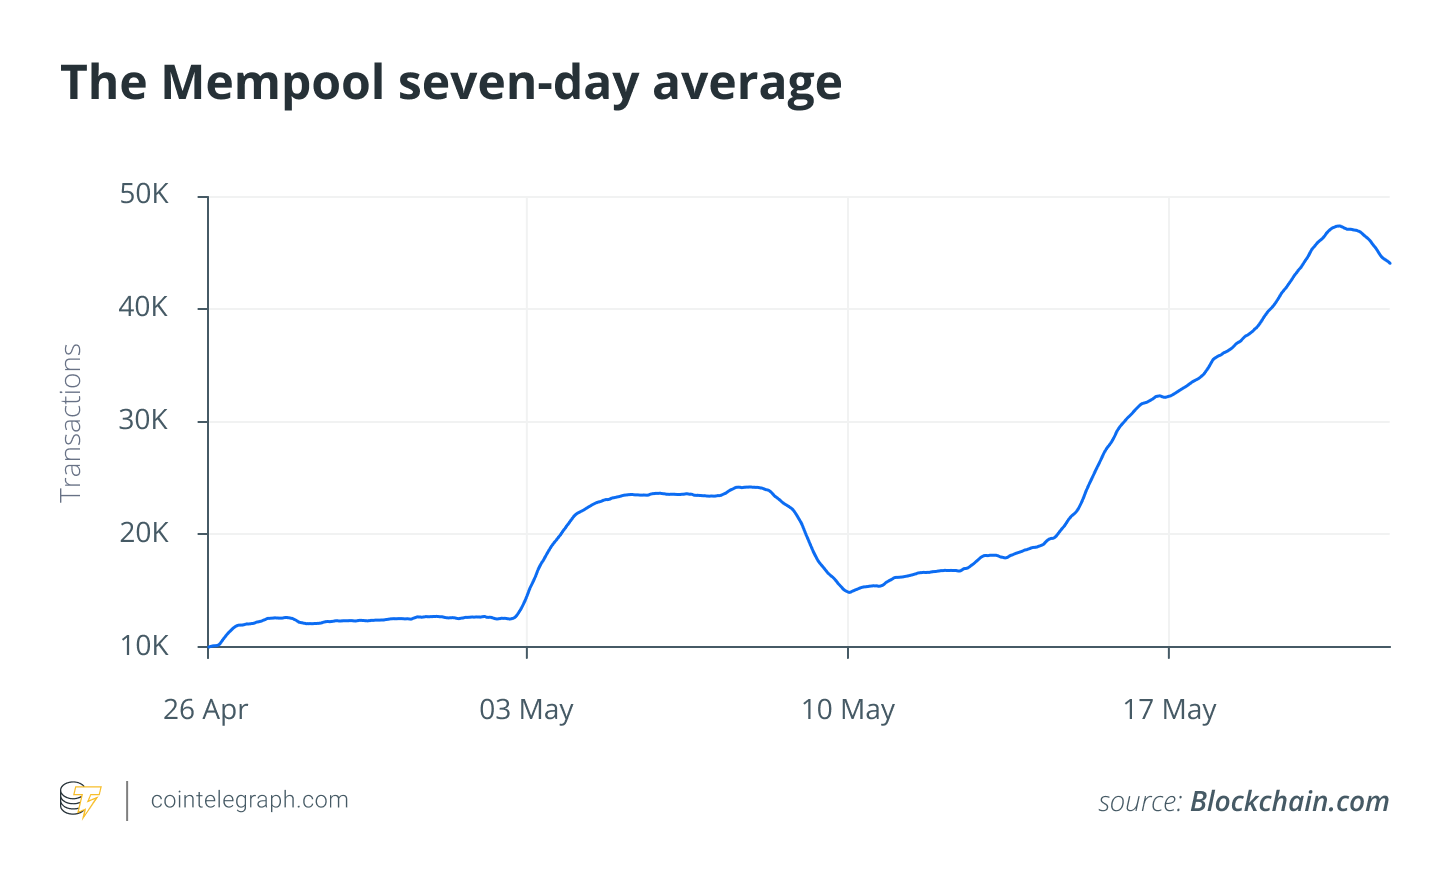 The Mempool seven-day average